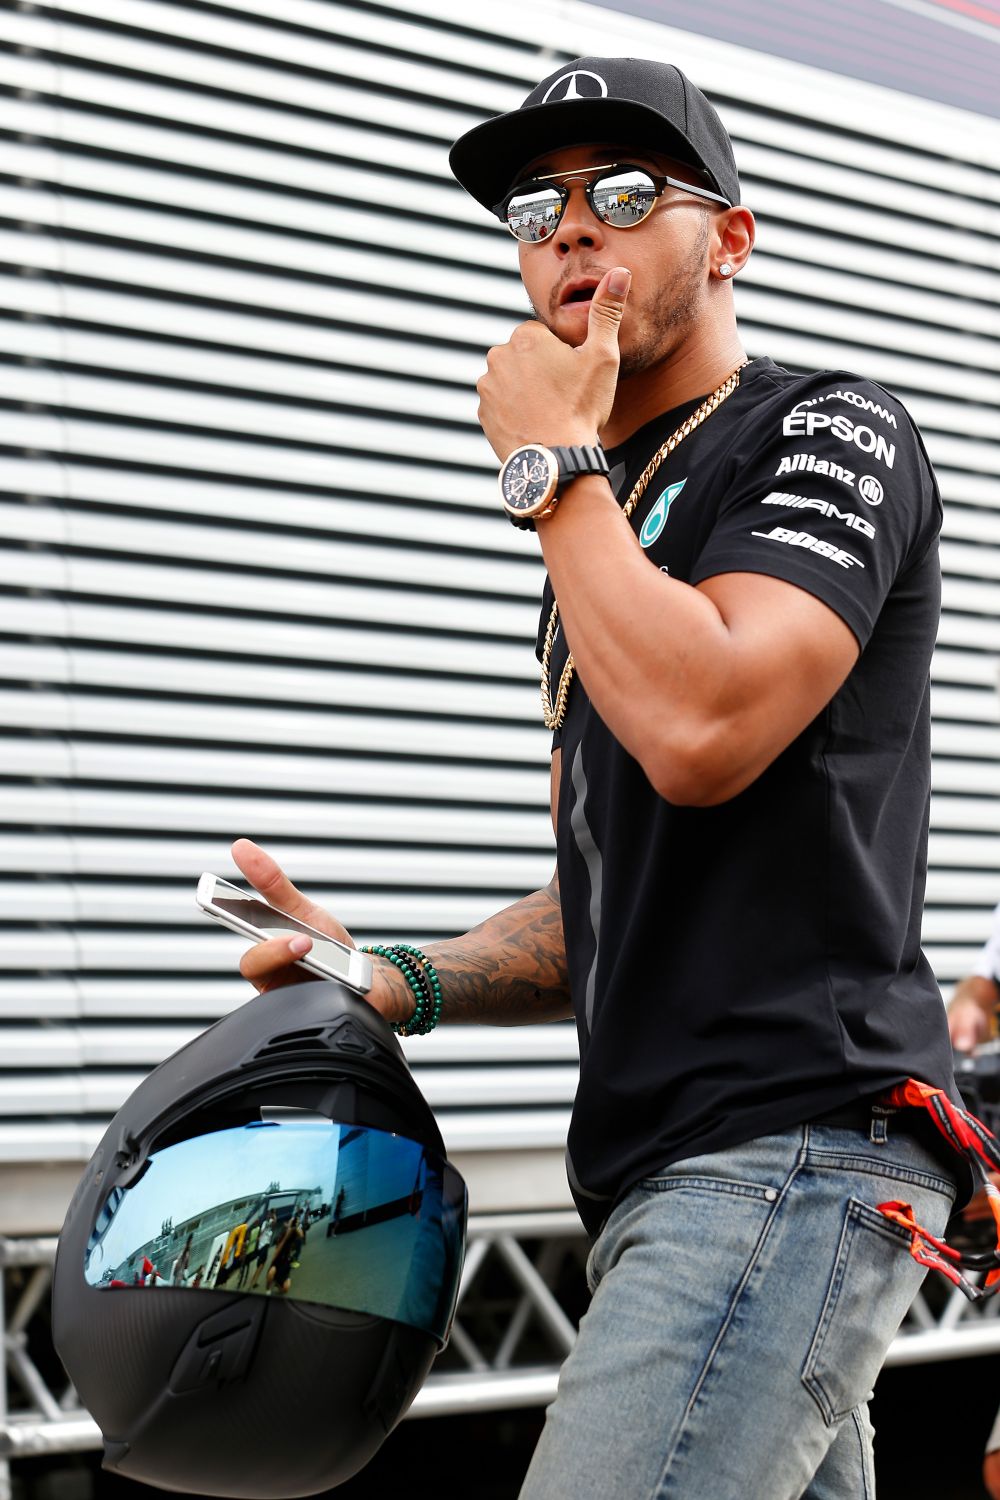 Transformarea incredibila a lui Hamilton! Cum arata acum parul starului din Formula 1. FOTO_2